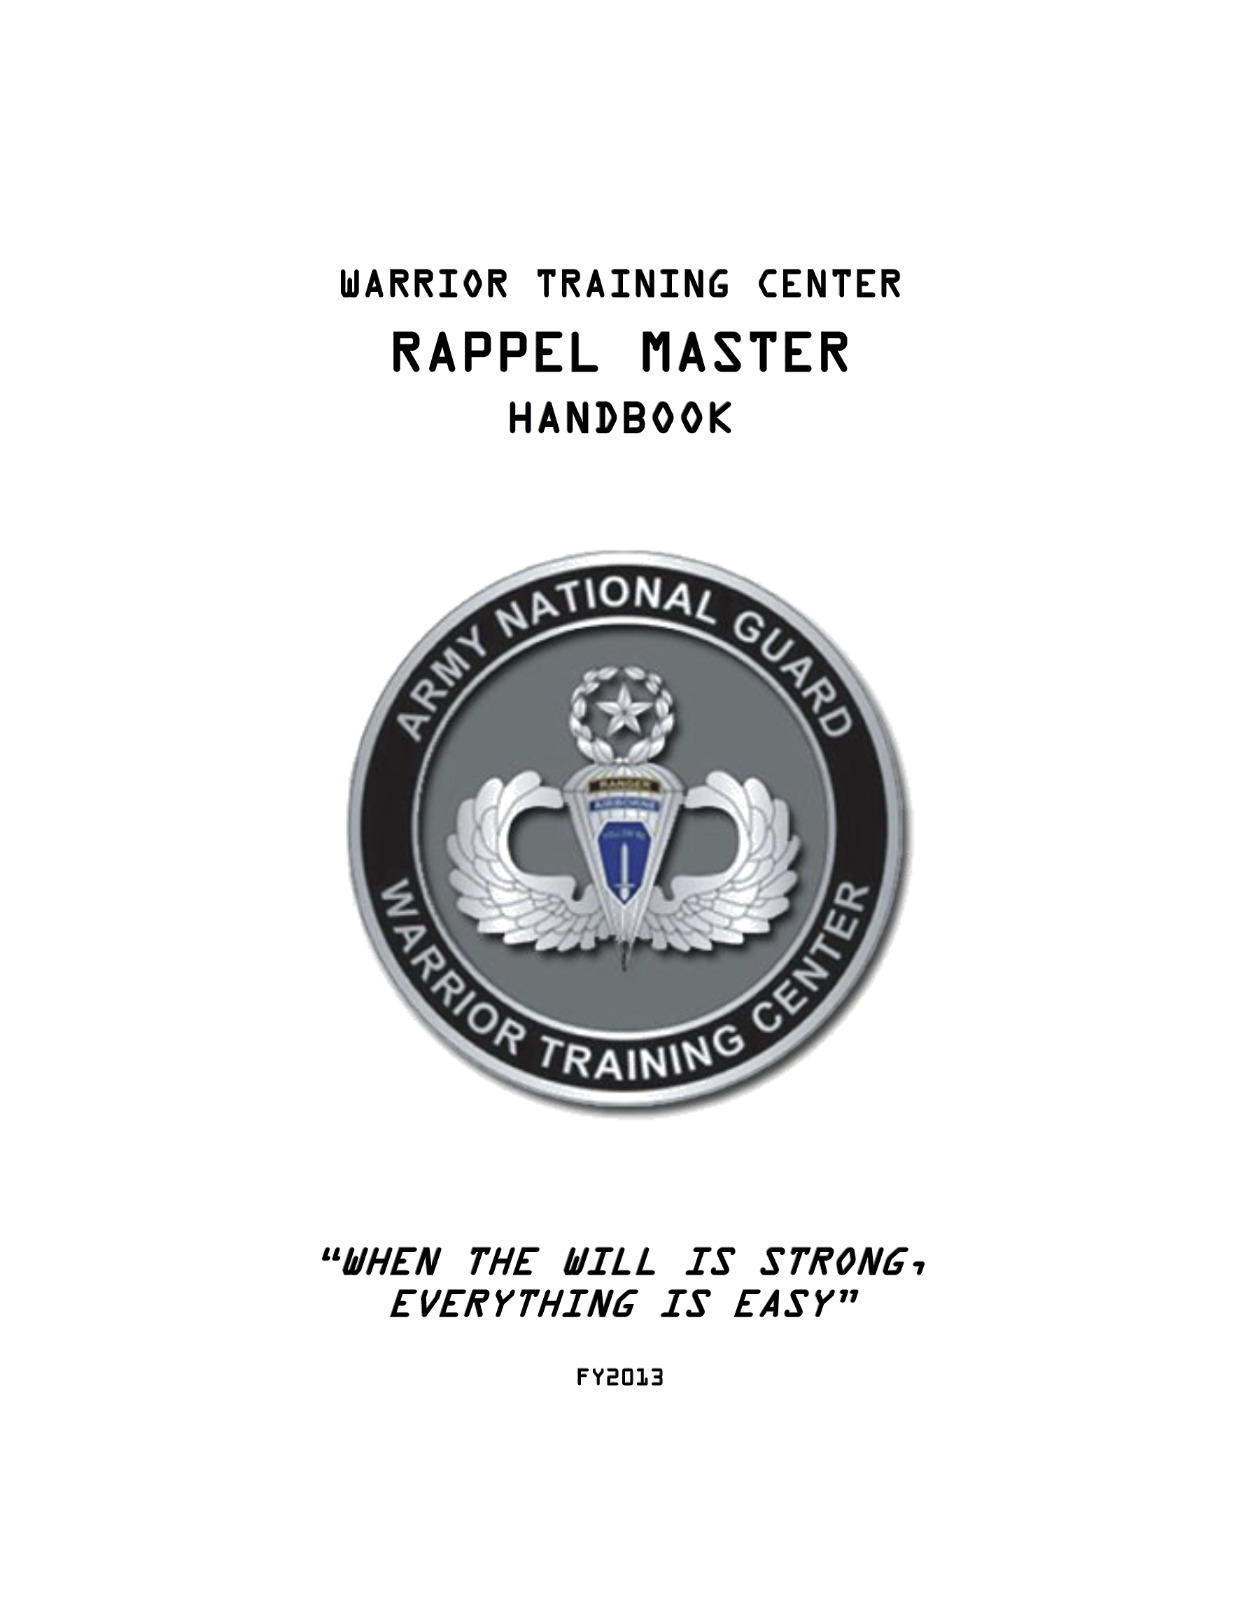 120 Page 2013 WARRIOR TRAINING CENTER RAPPEL MASTER Handbook Manual on CD